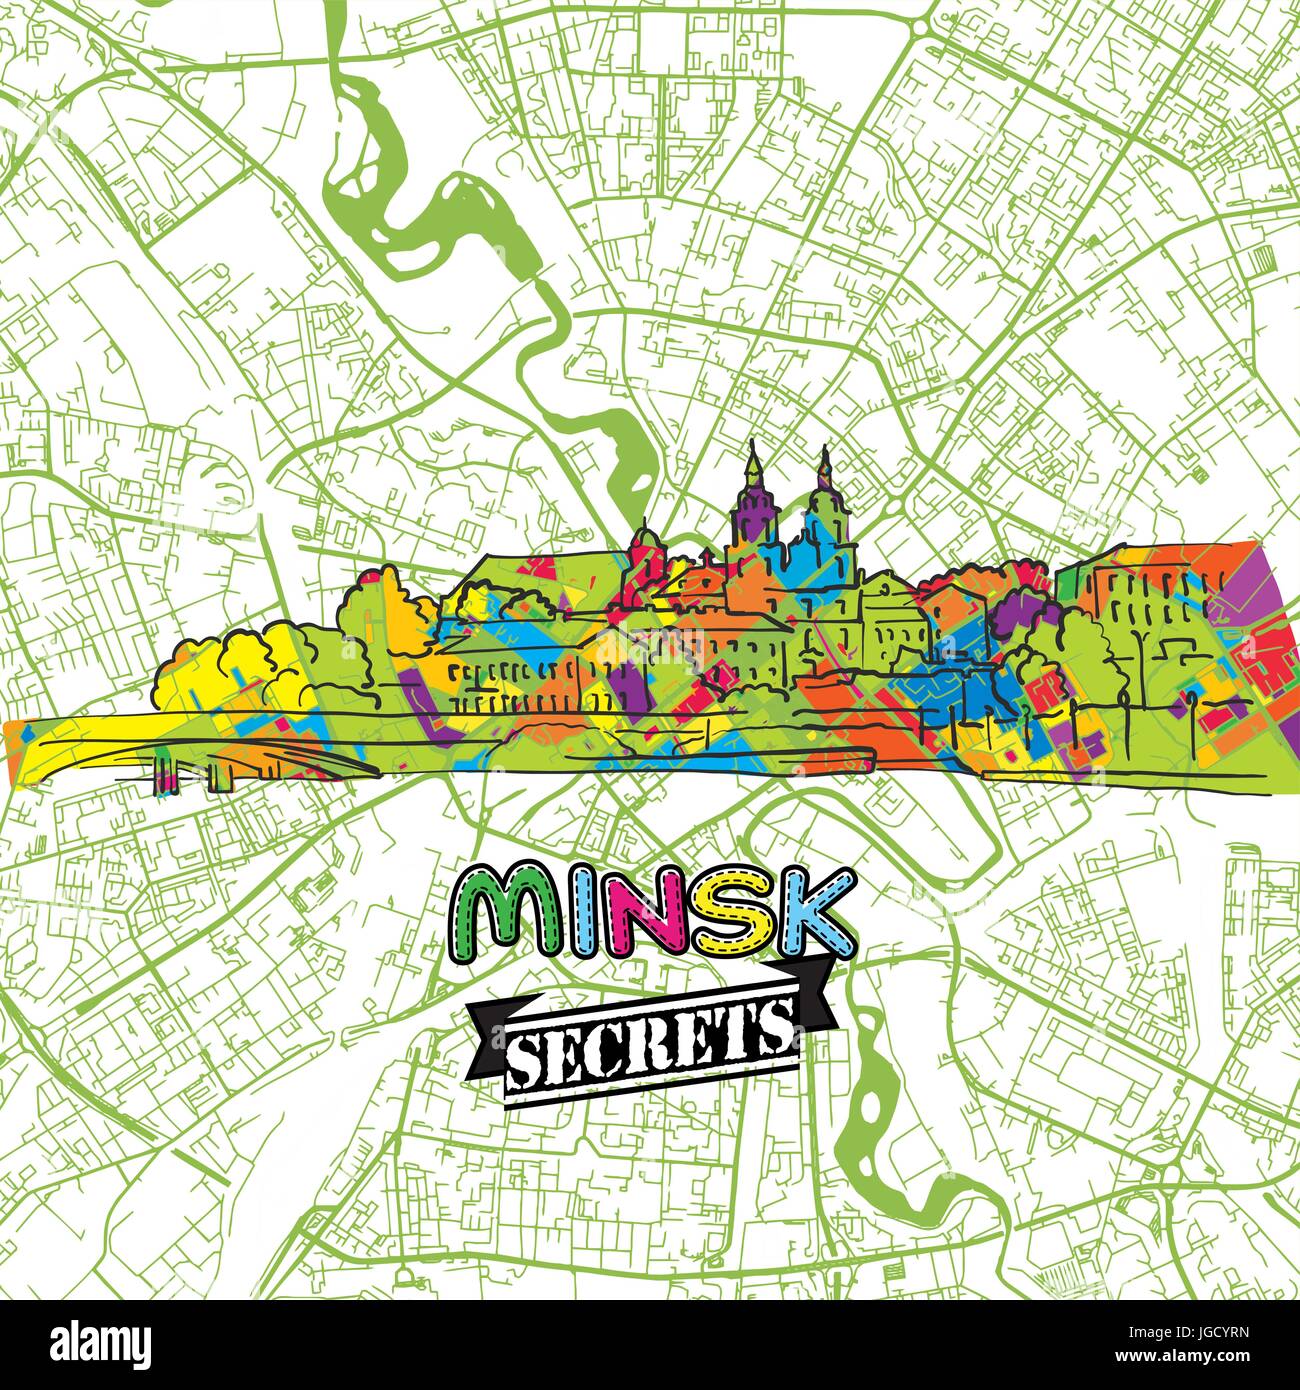 Minsk reisen Geheimnisse Art Map für die Zuordnung von Experten und Reiseführer. Handgemachte Stadt Logo, Typo-Abzeichen und Hand gezeichnete Vektor-Bild an der Spitze sind gruppiert und Stock Vektor